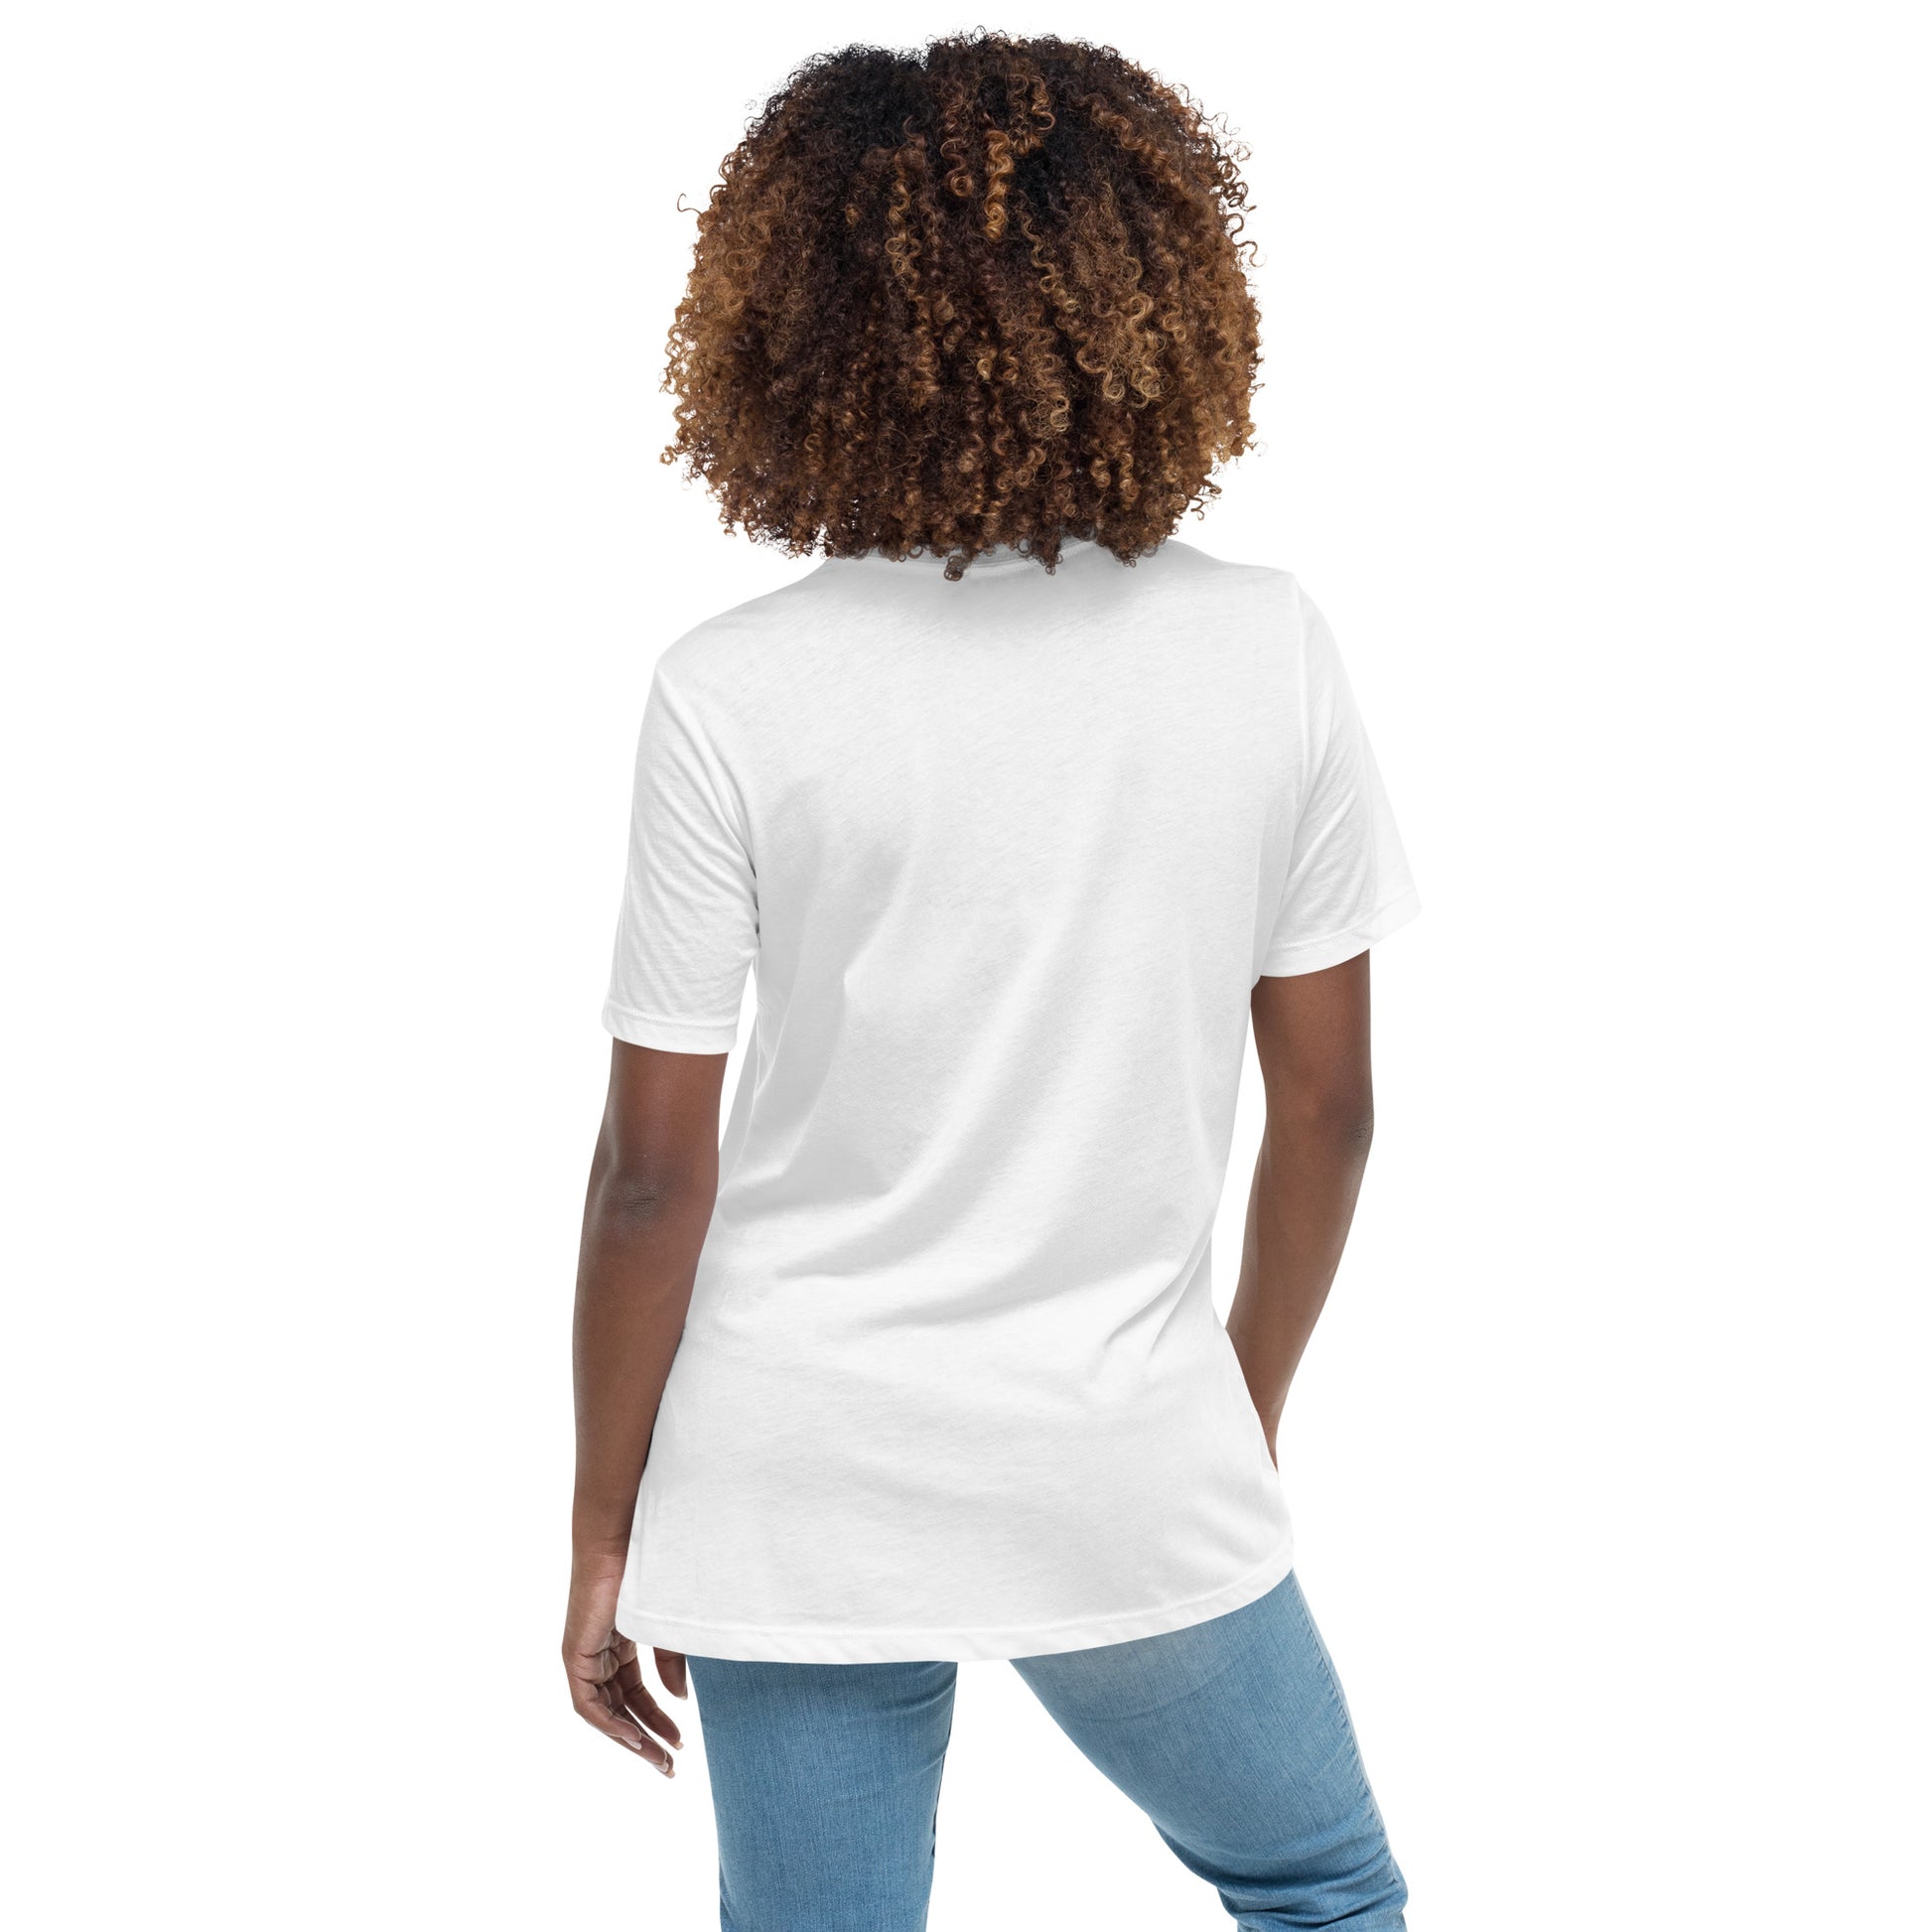 cute entrepreneur business girl boss women's 100% cotton T-shirt